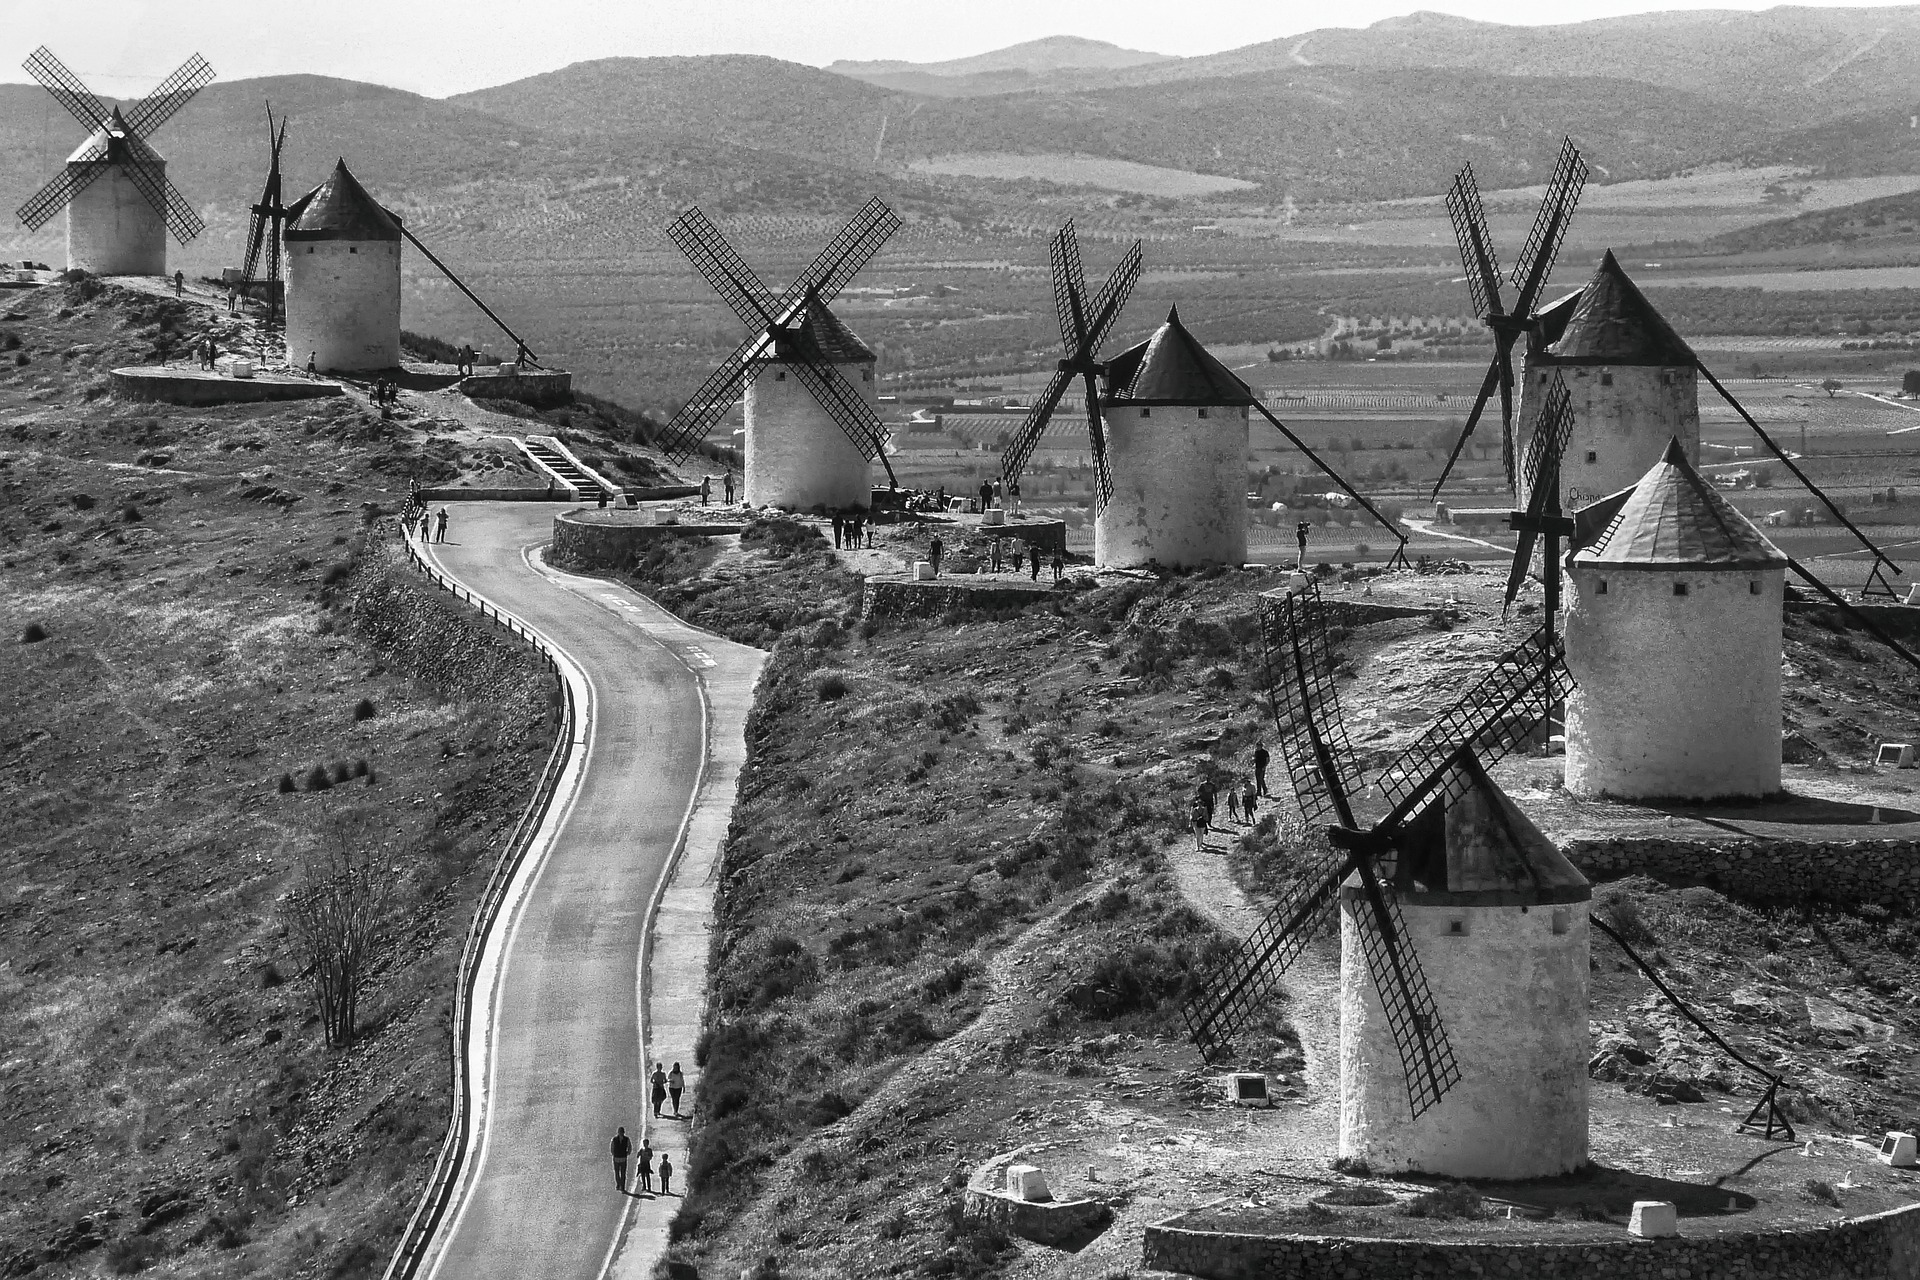 Windmills in Castilla-La Mancha